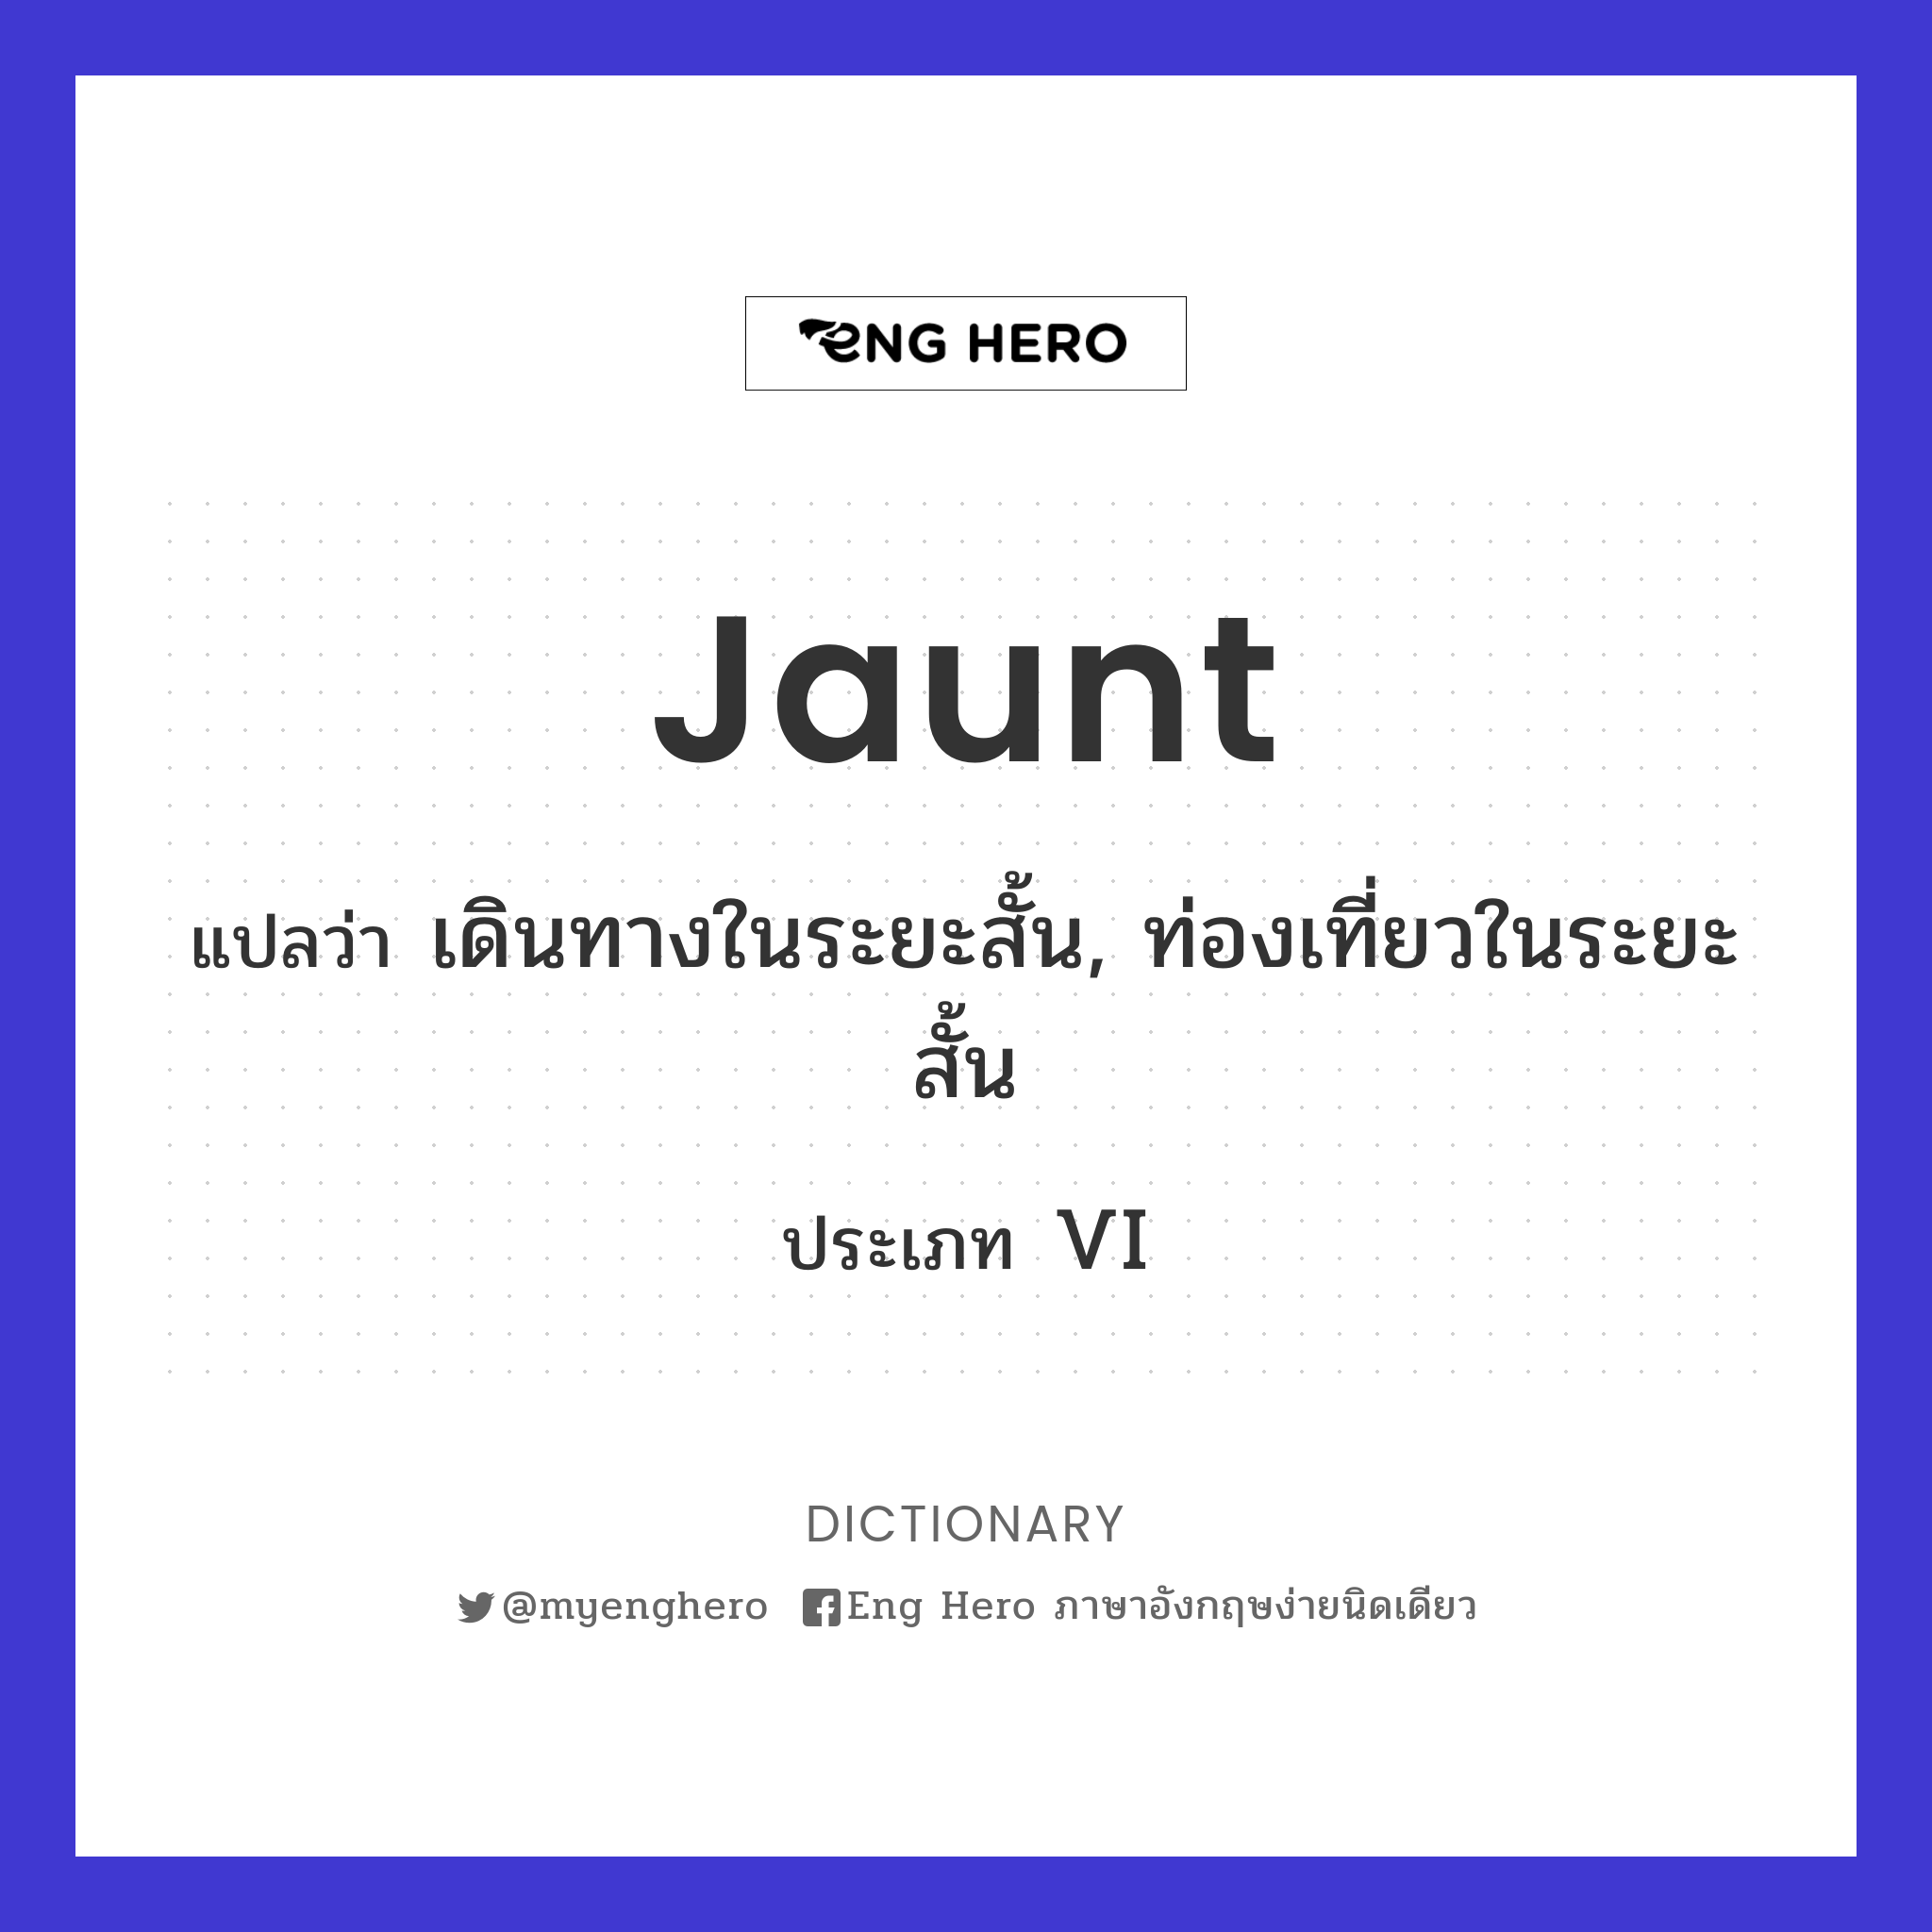 jaunt meaning in thai